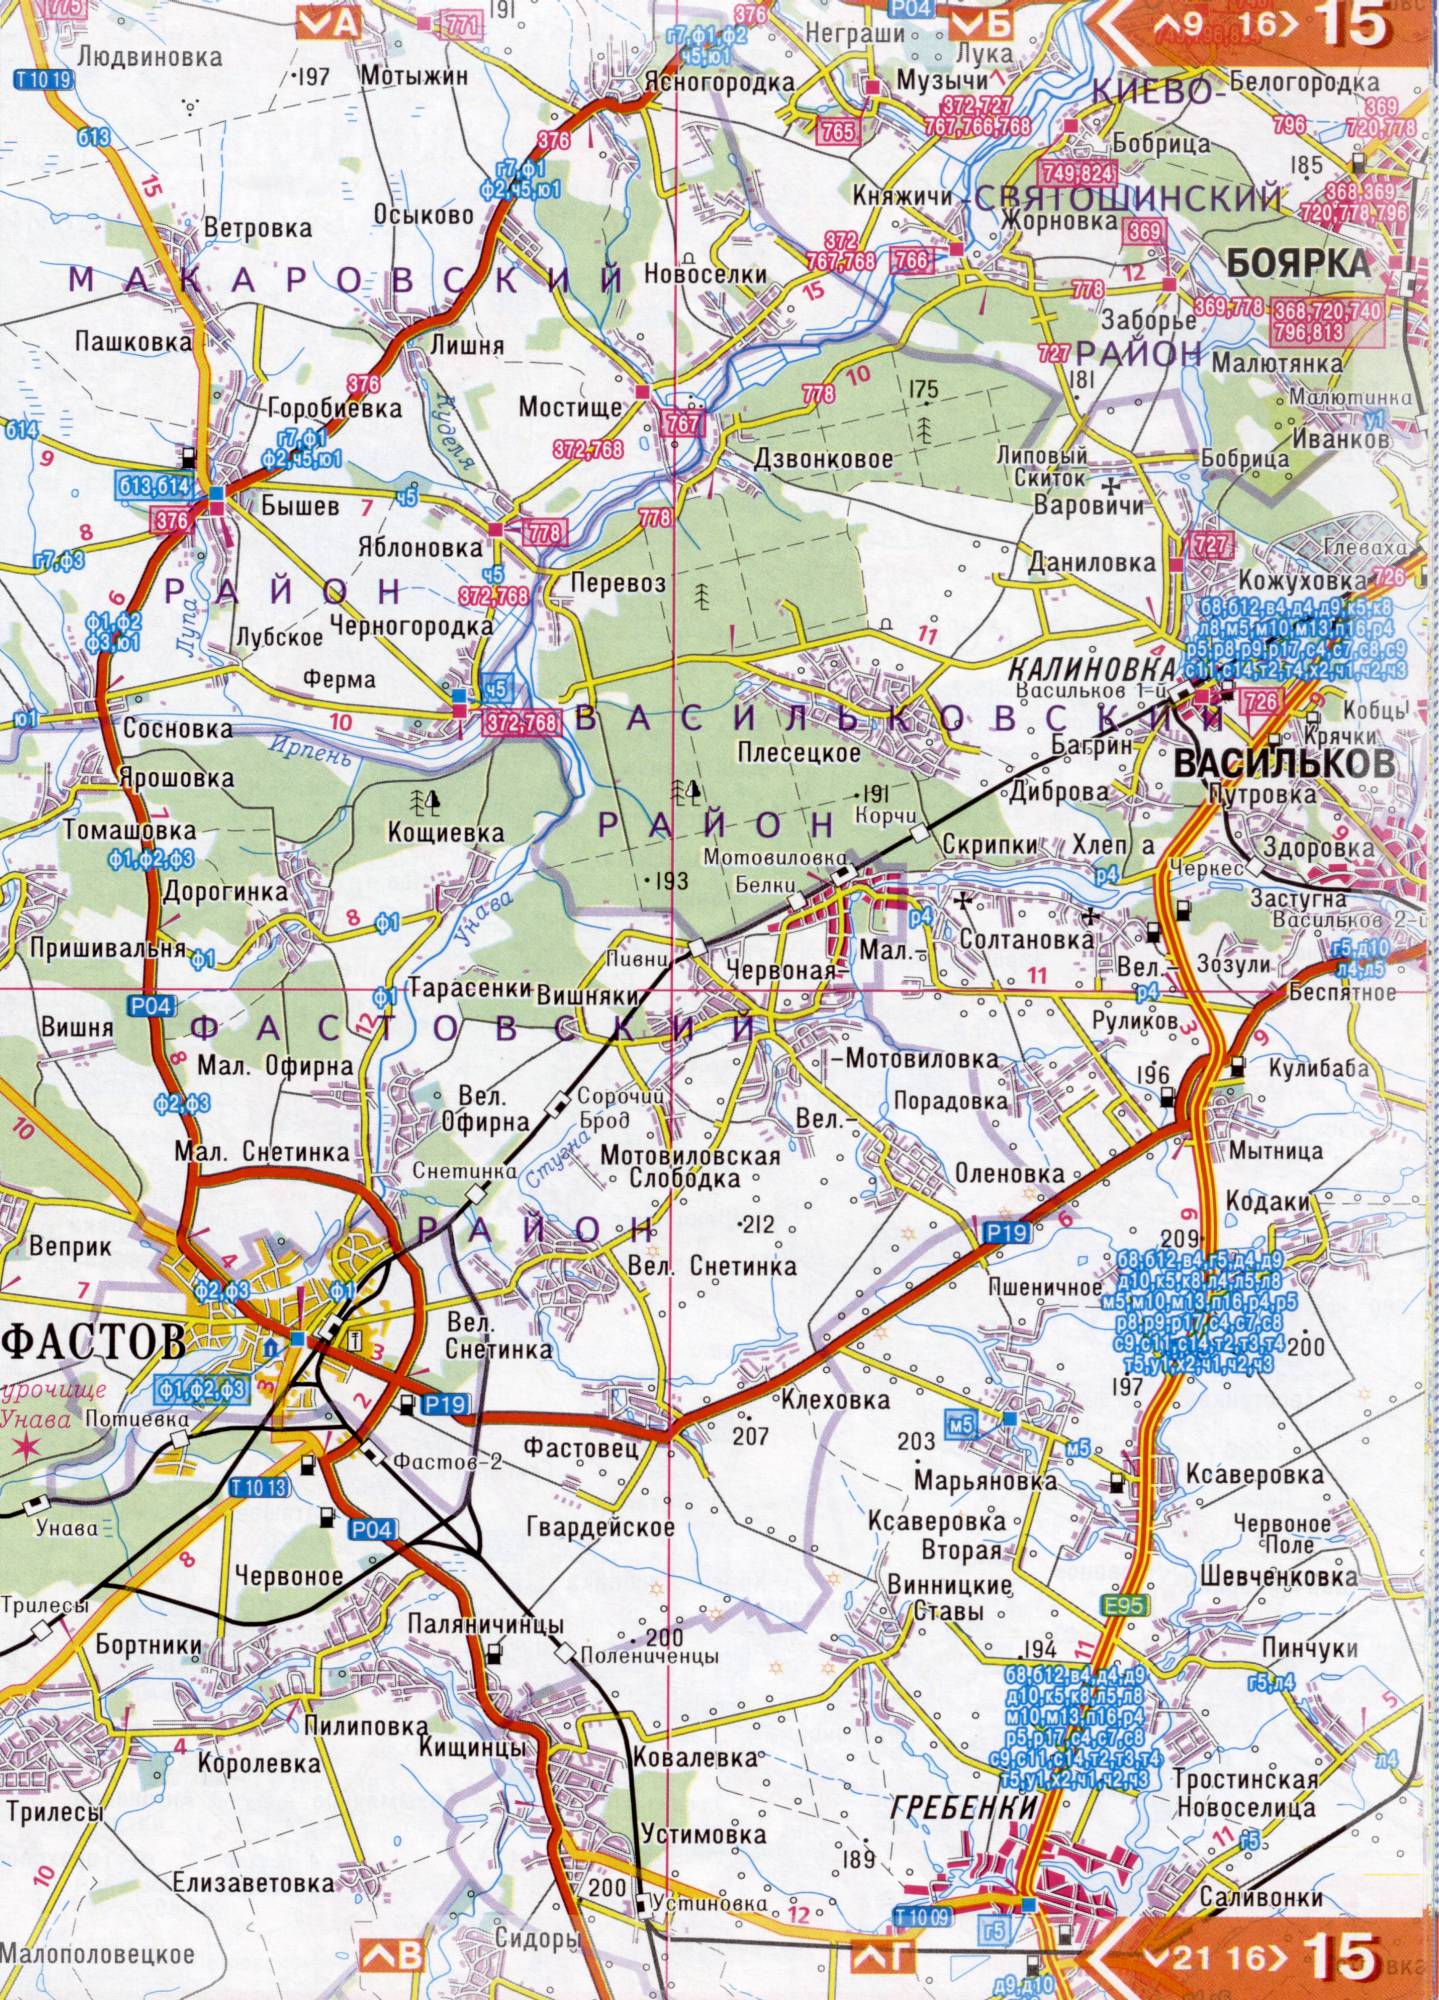 Atlas von der Region Kiew. Eine detaillierte Karte der Region Kiew von dem Atlas von Autobahnen. Kiewer Gebiet auf einer detaillierten Karte Maßstab 1cm = 3km. Frei, B3 - Fastow